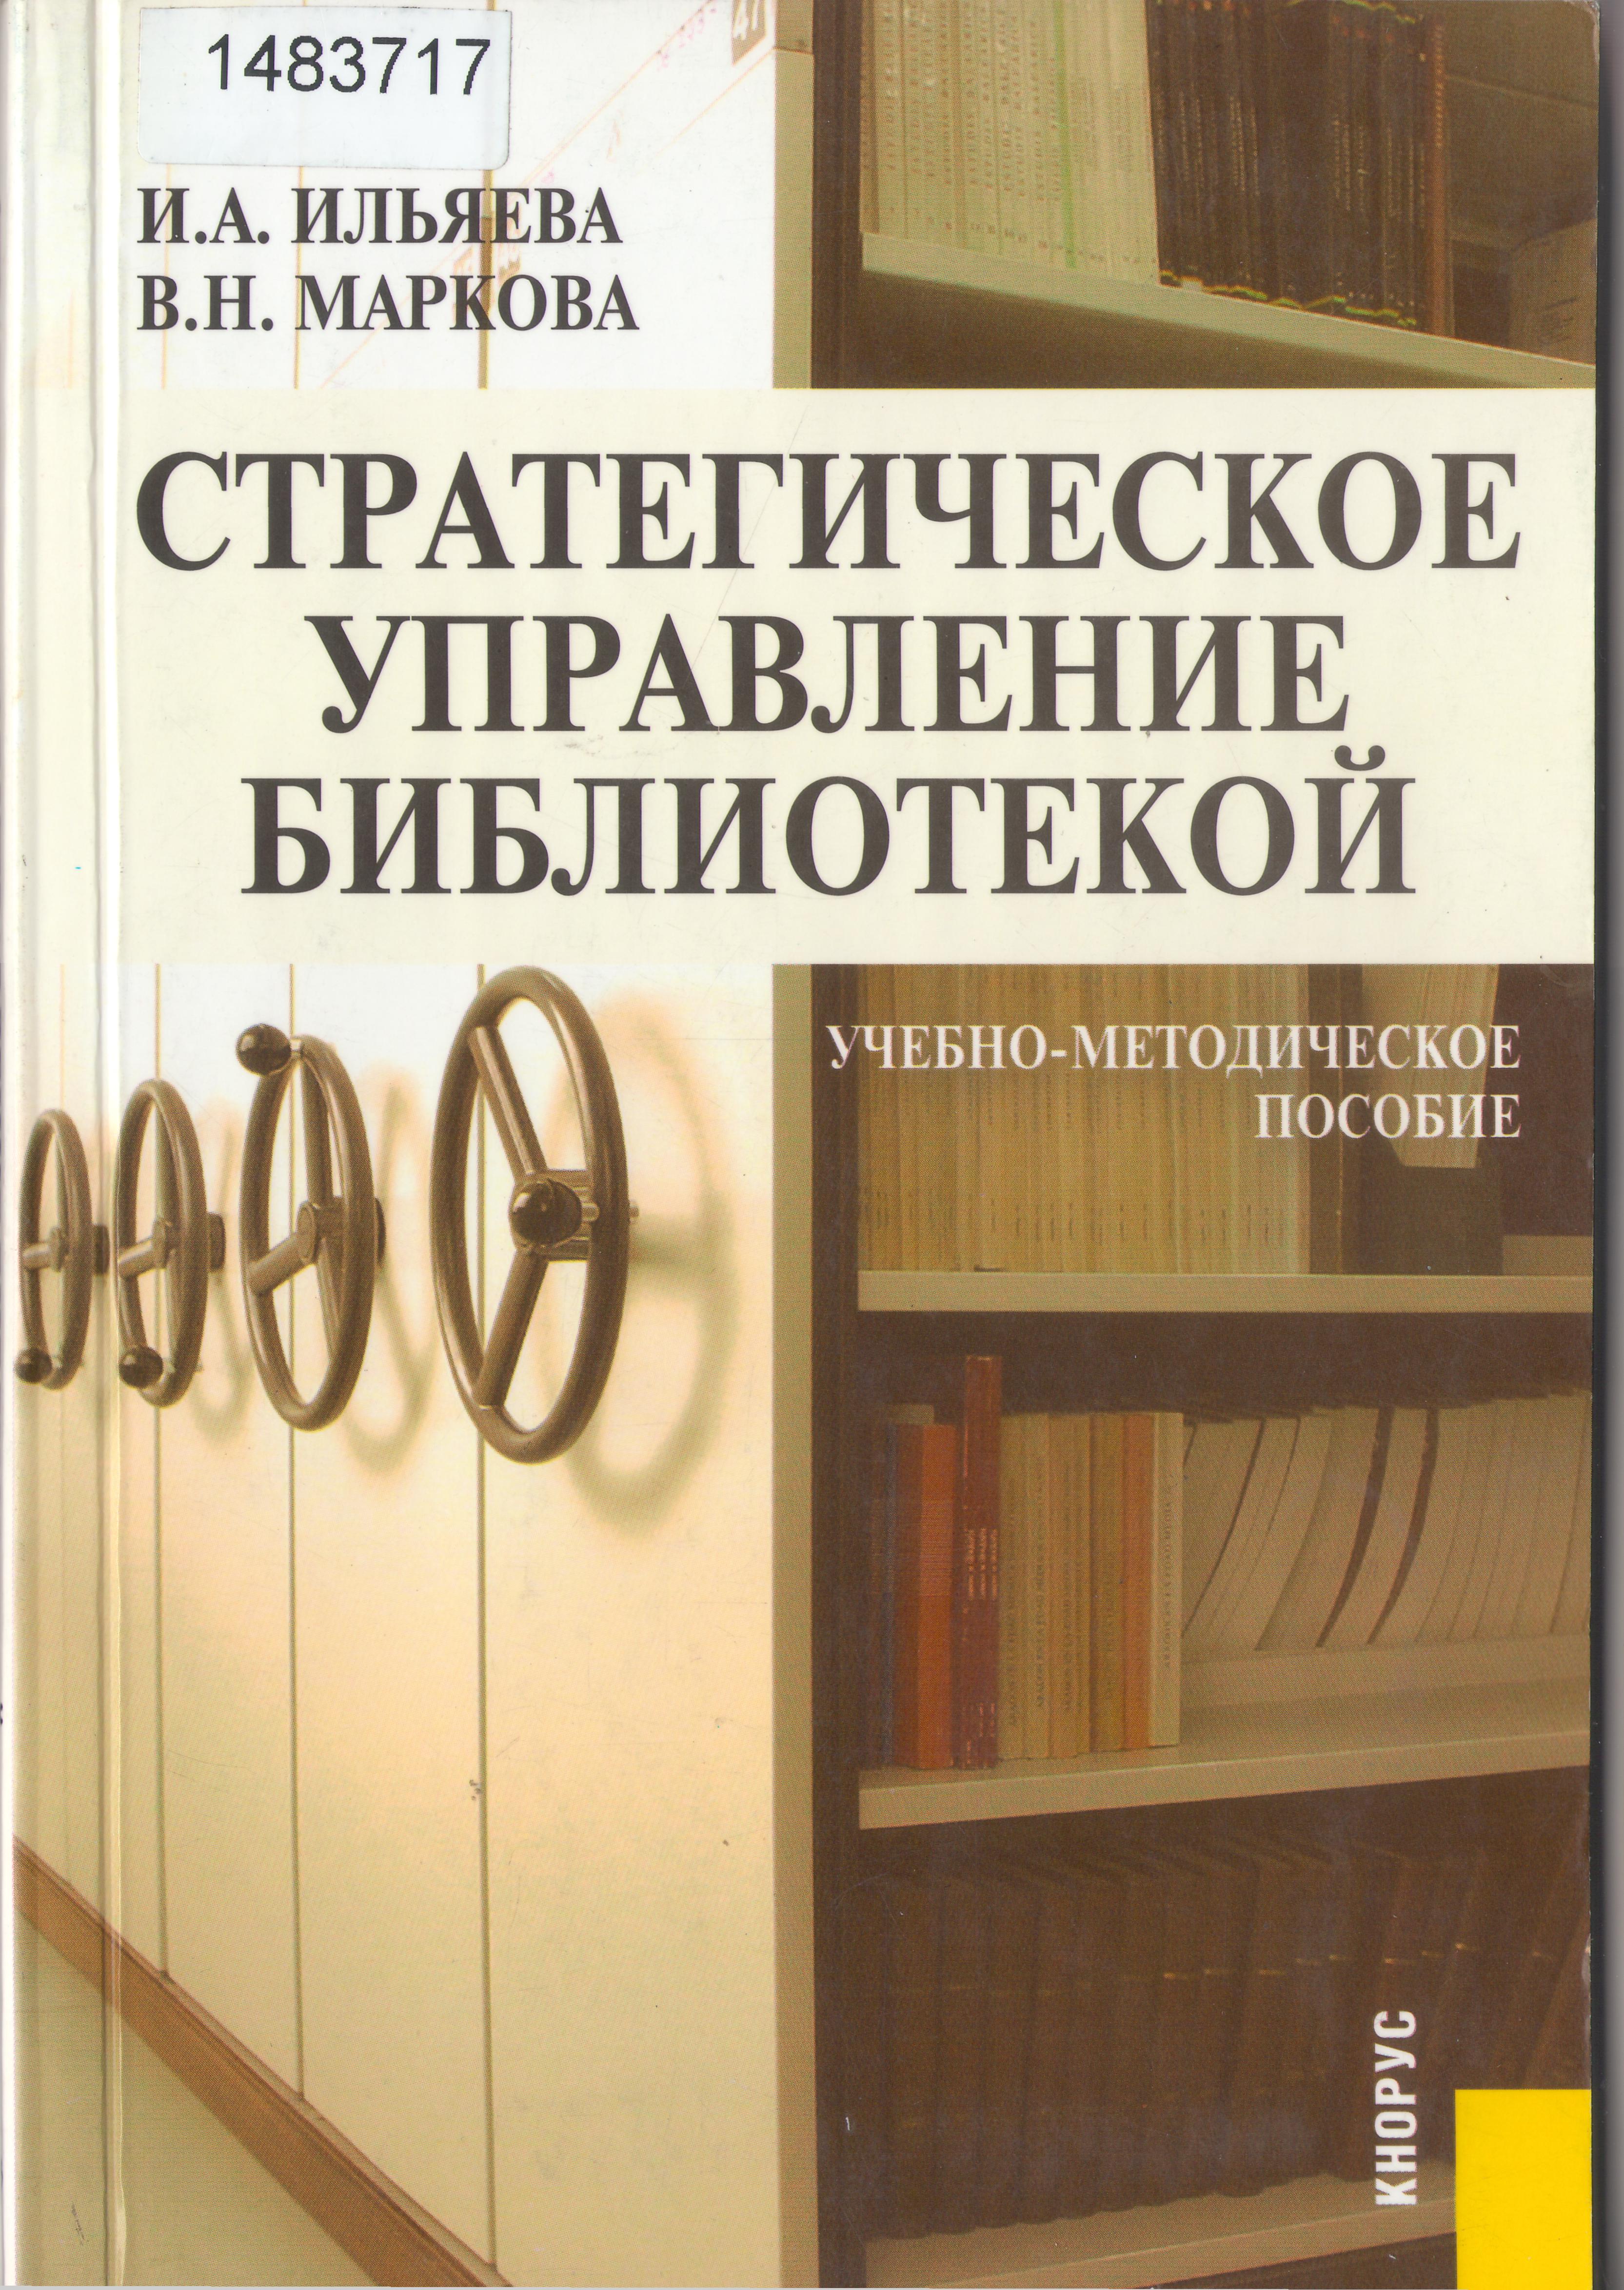 Книга стратегическое управление библиотек